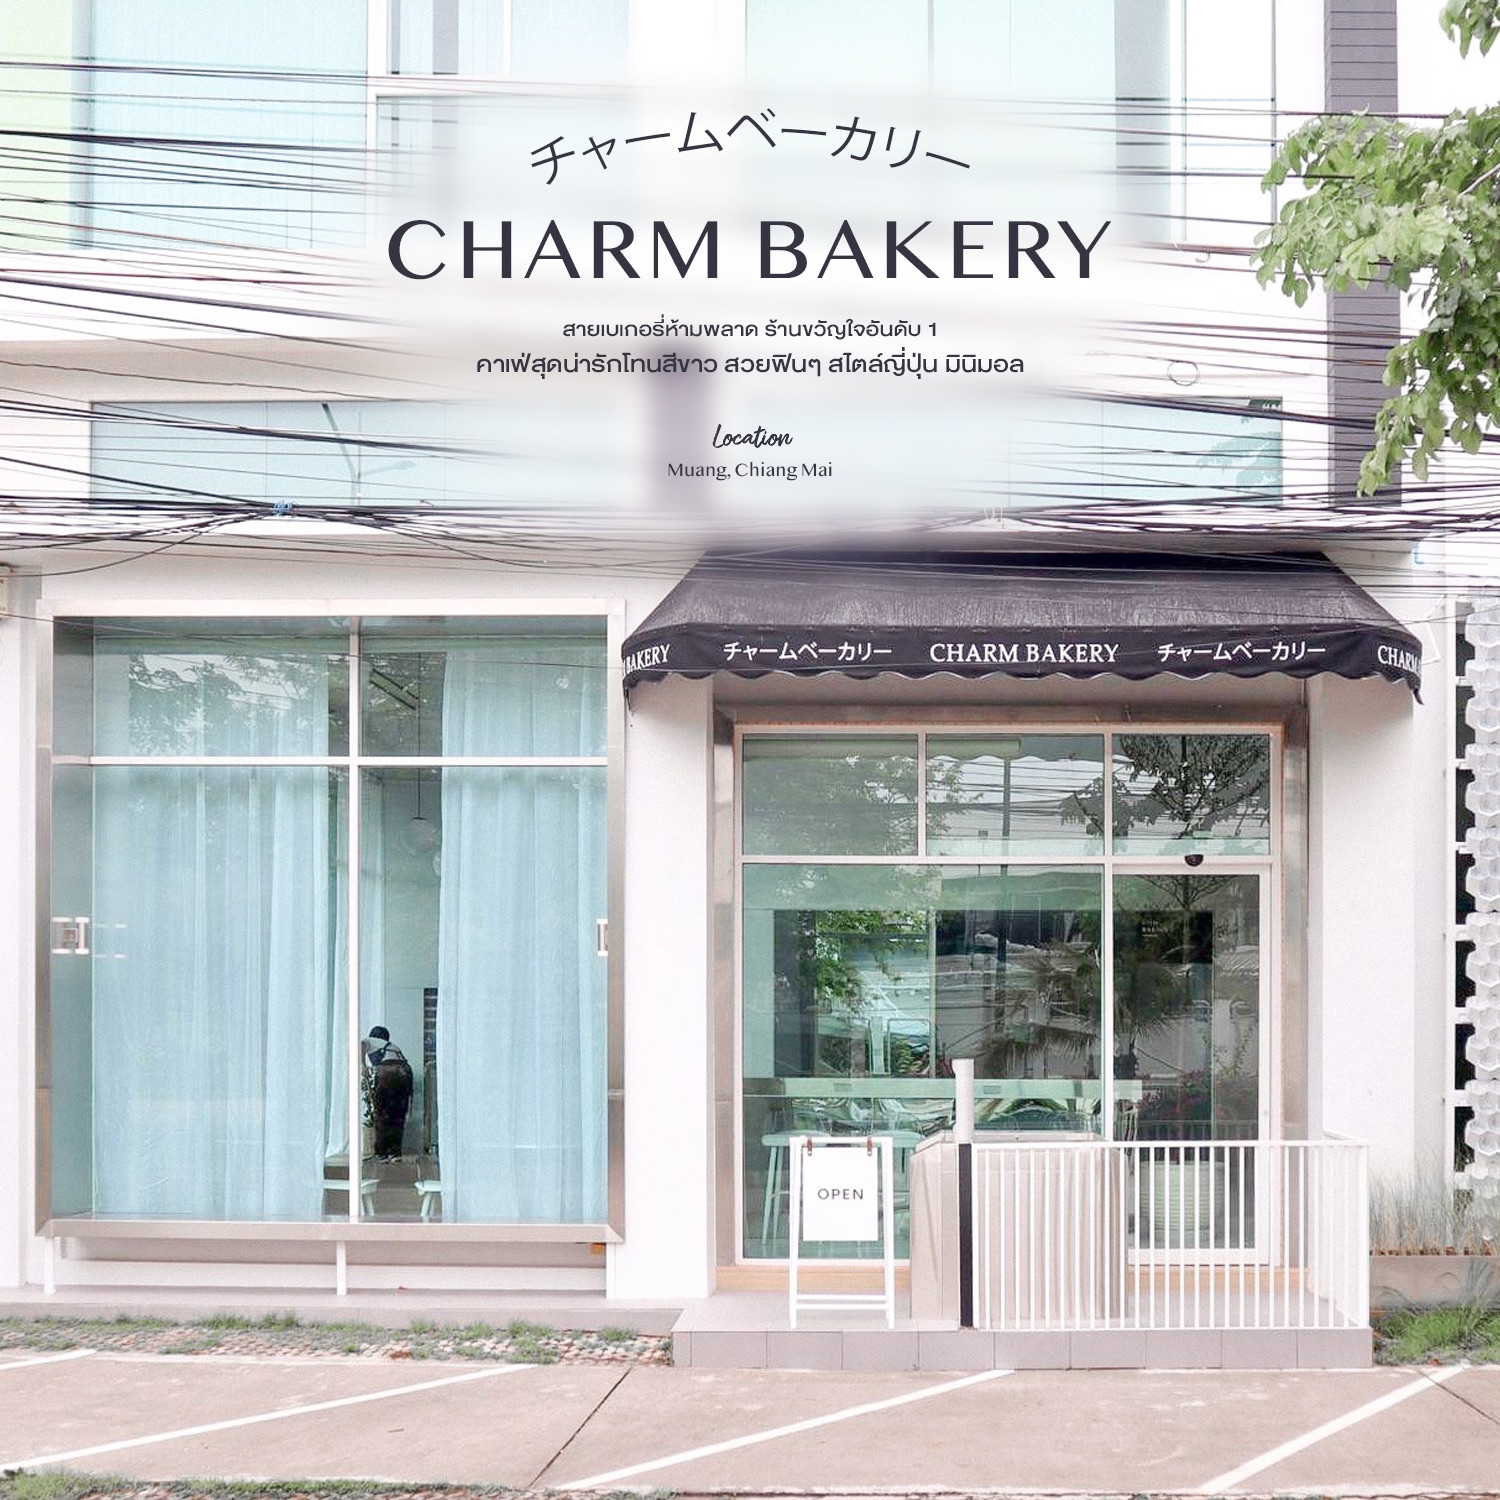 CHARM BAKERY - คาเฟ่เชียงใหม่ฟินๆ สไตล์ญี่ปุ่น